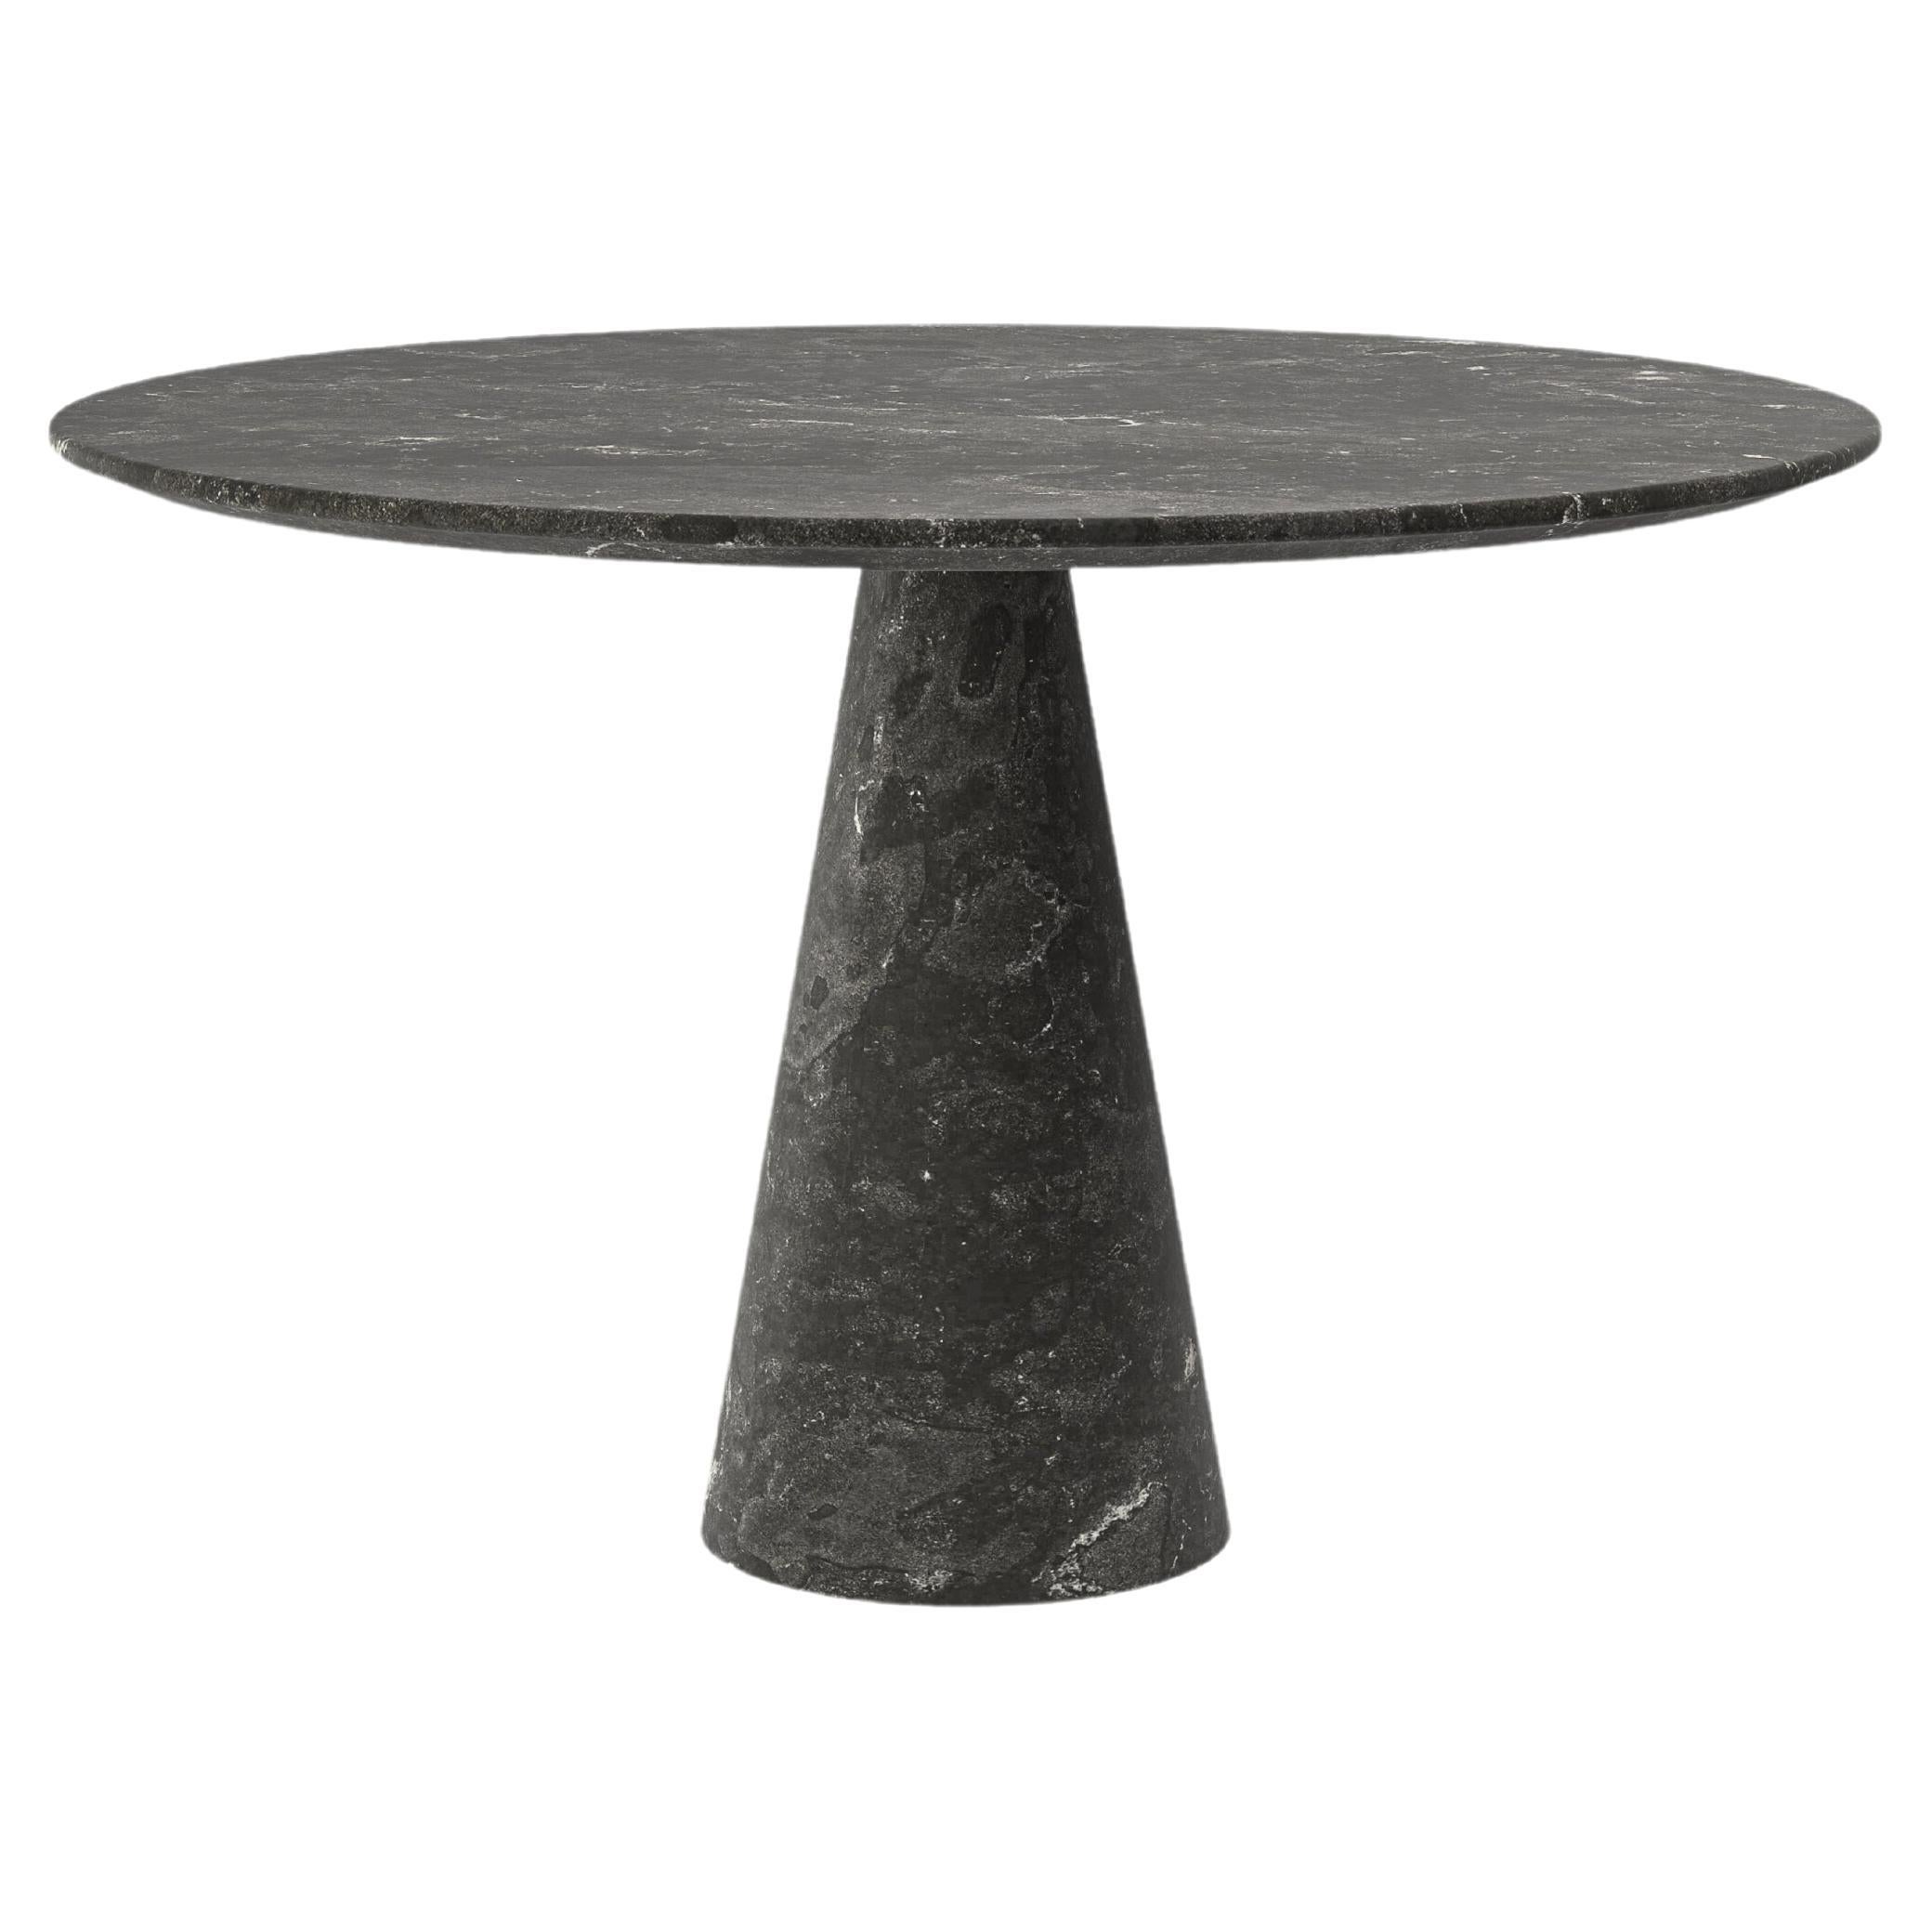 FORM(LA) Cono Table de salle à manger ronde 54L x 54 "L x 30H Nero Petite Granite